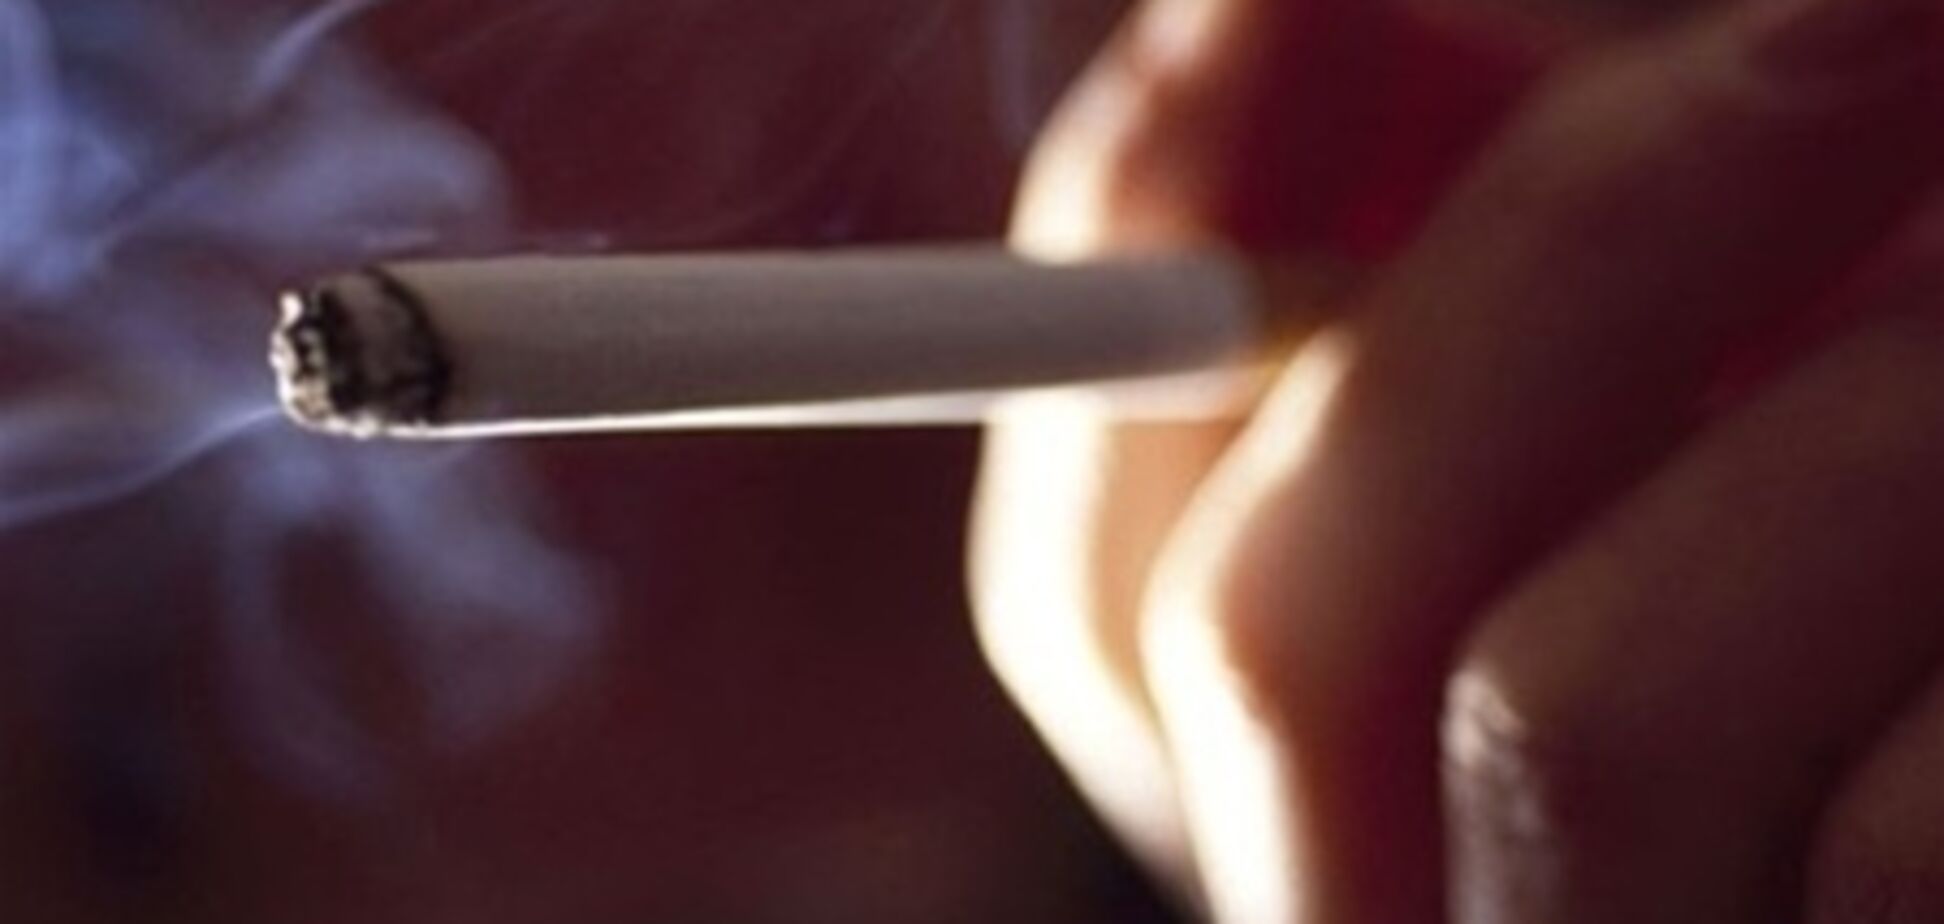 Американские компании теряют на курильщиках $6 тыс в год